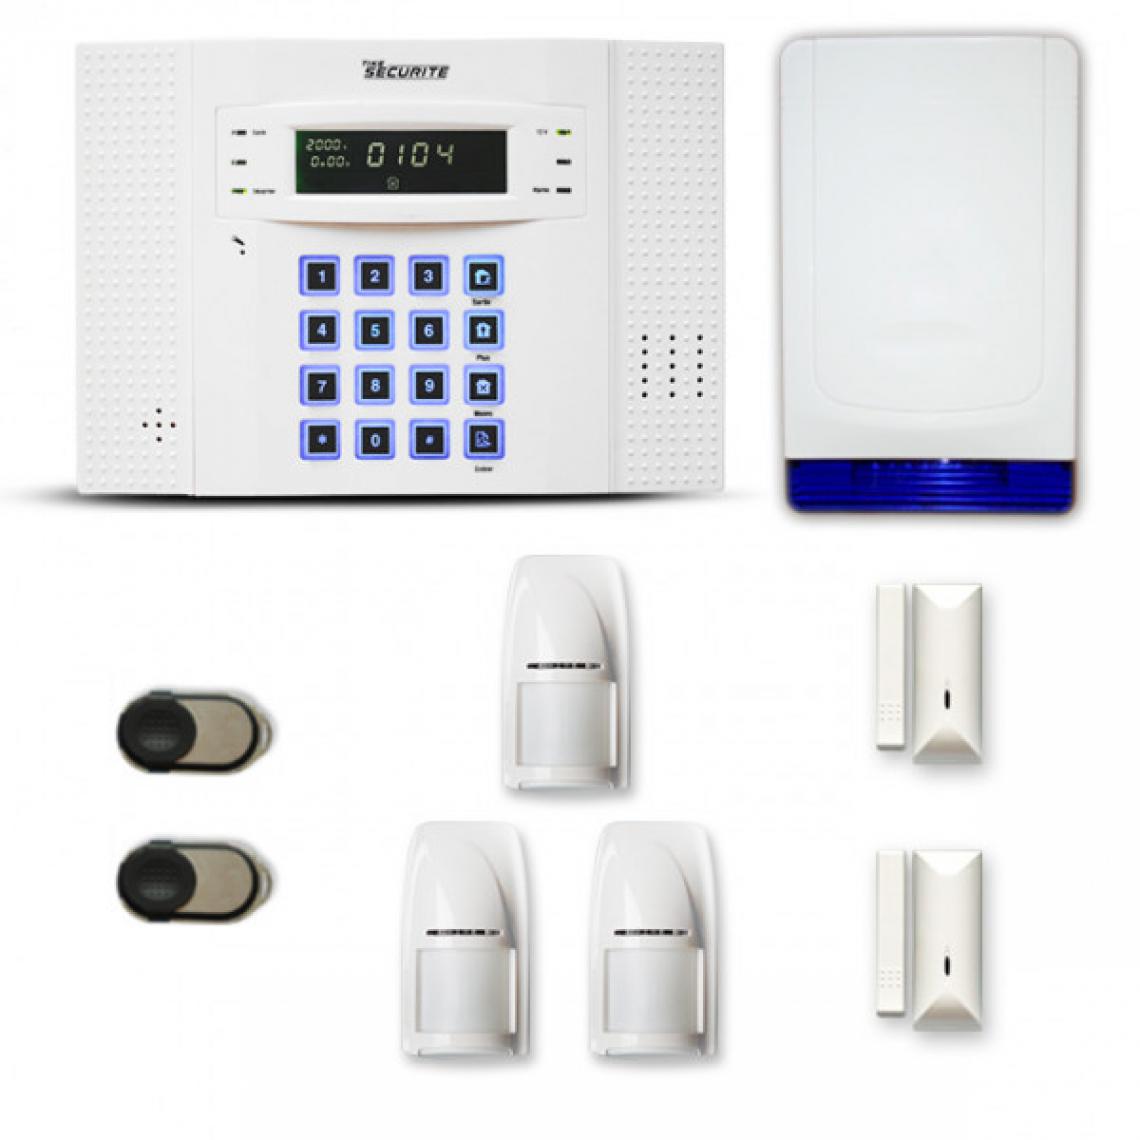 Tike Securite - Alarme maison sans fil DNB35 Compatible Box internet - Alarme connectée